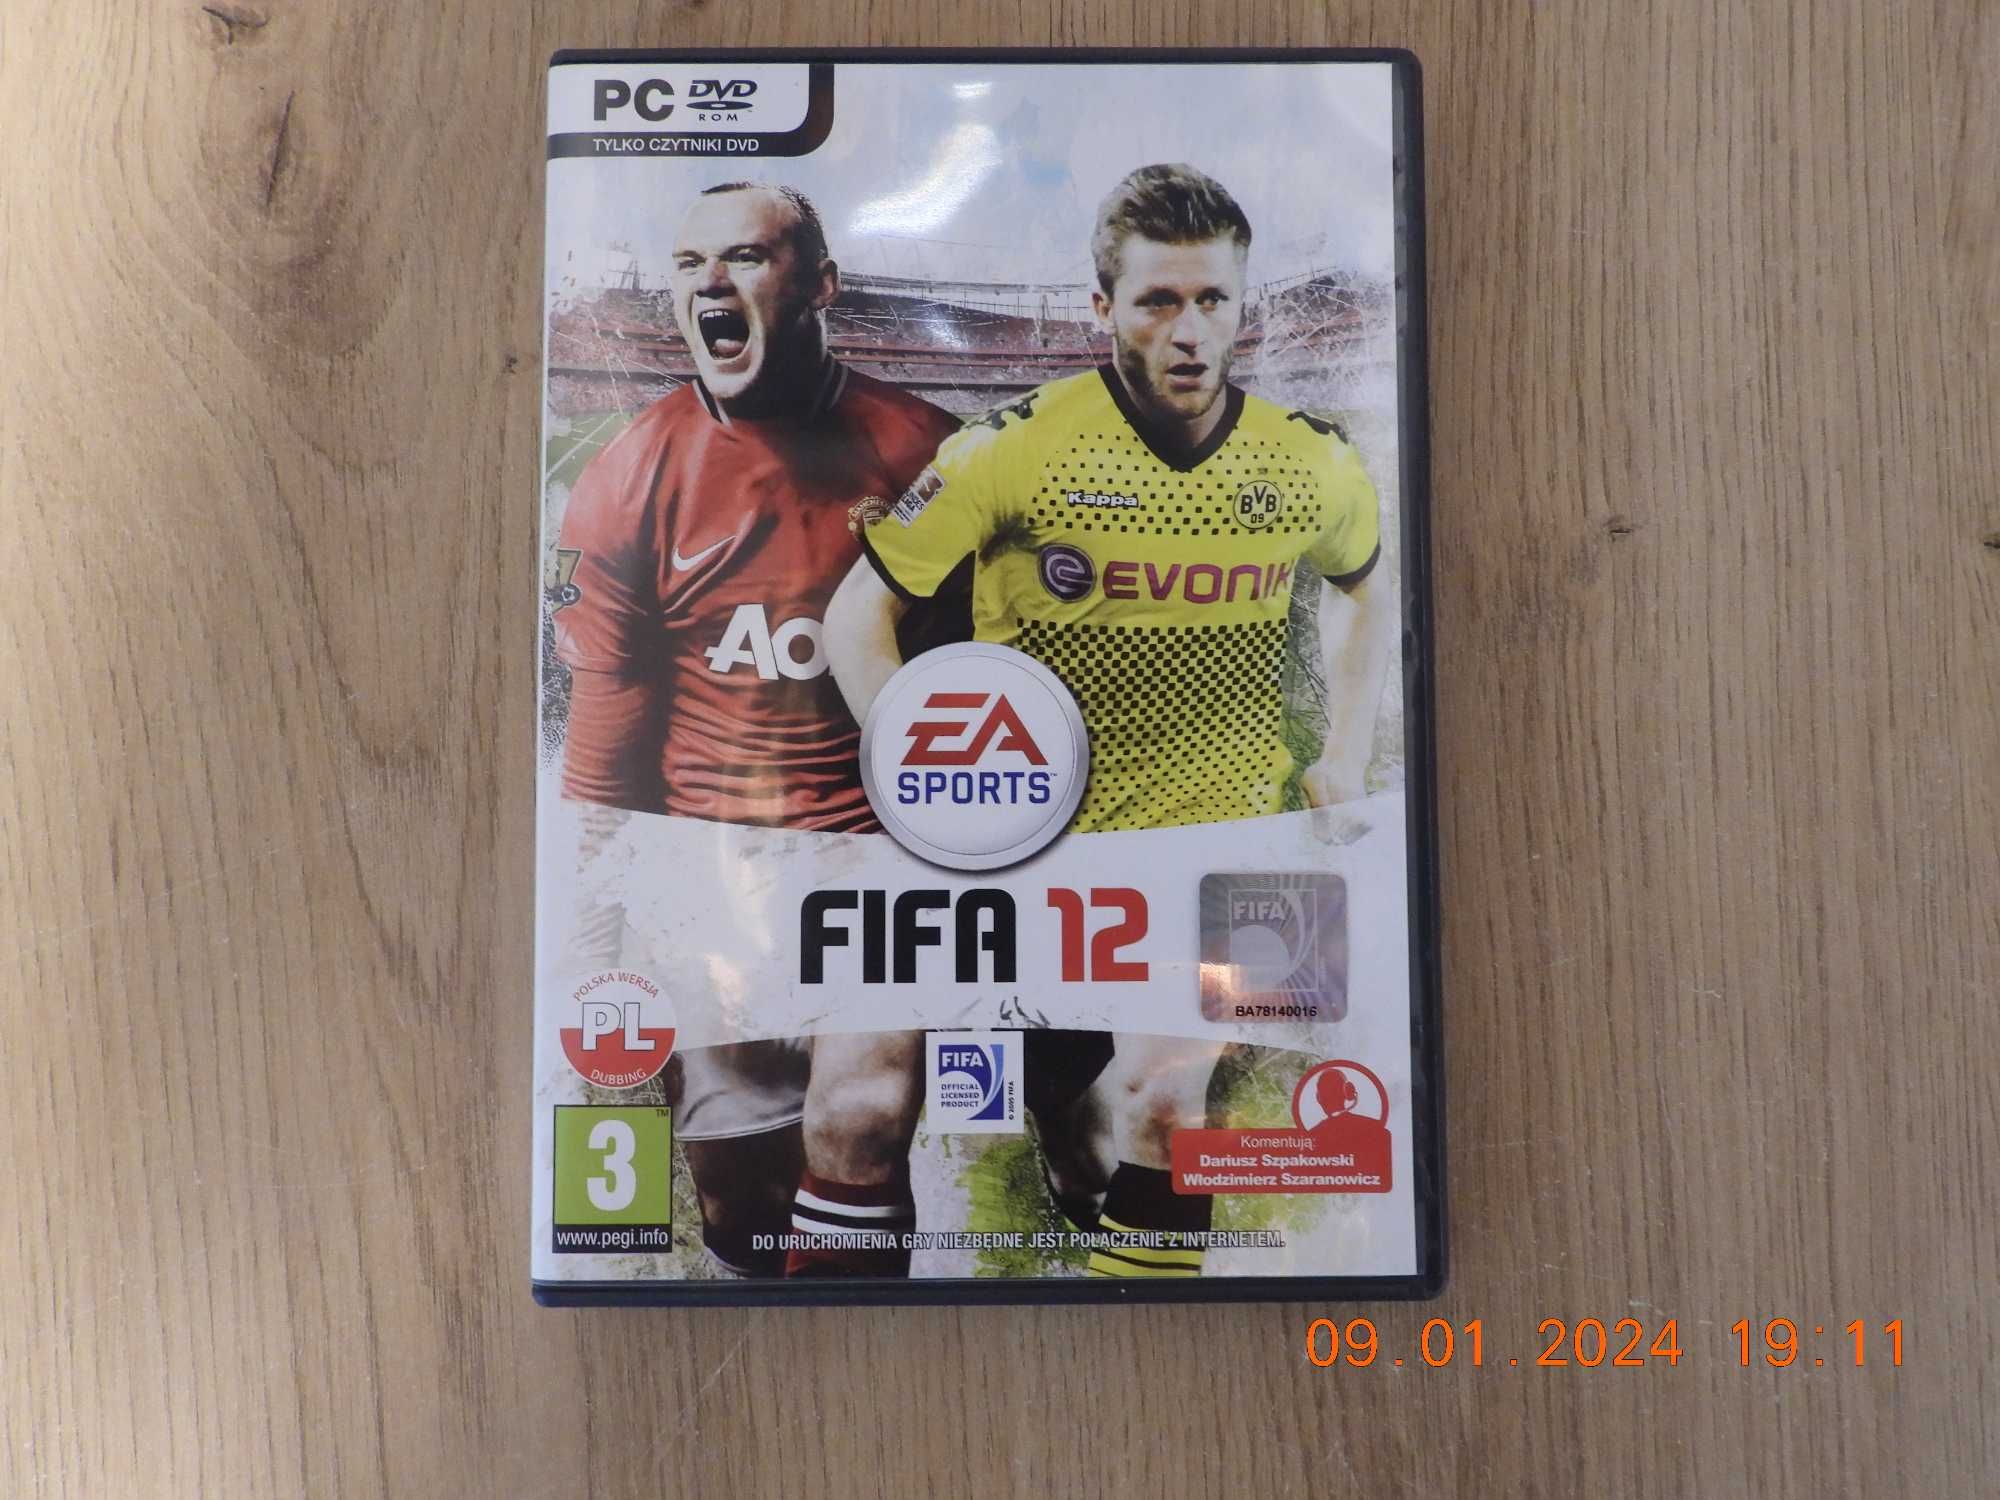 FIFA 12 - Premierowe wydanie. Wersja pudełkowa.  PL  - PC